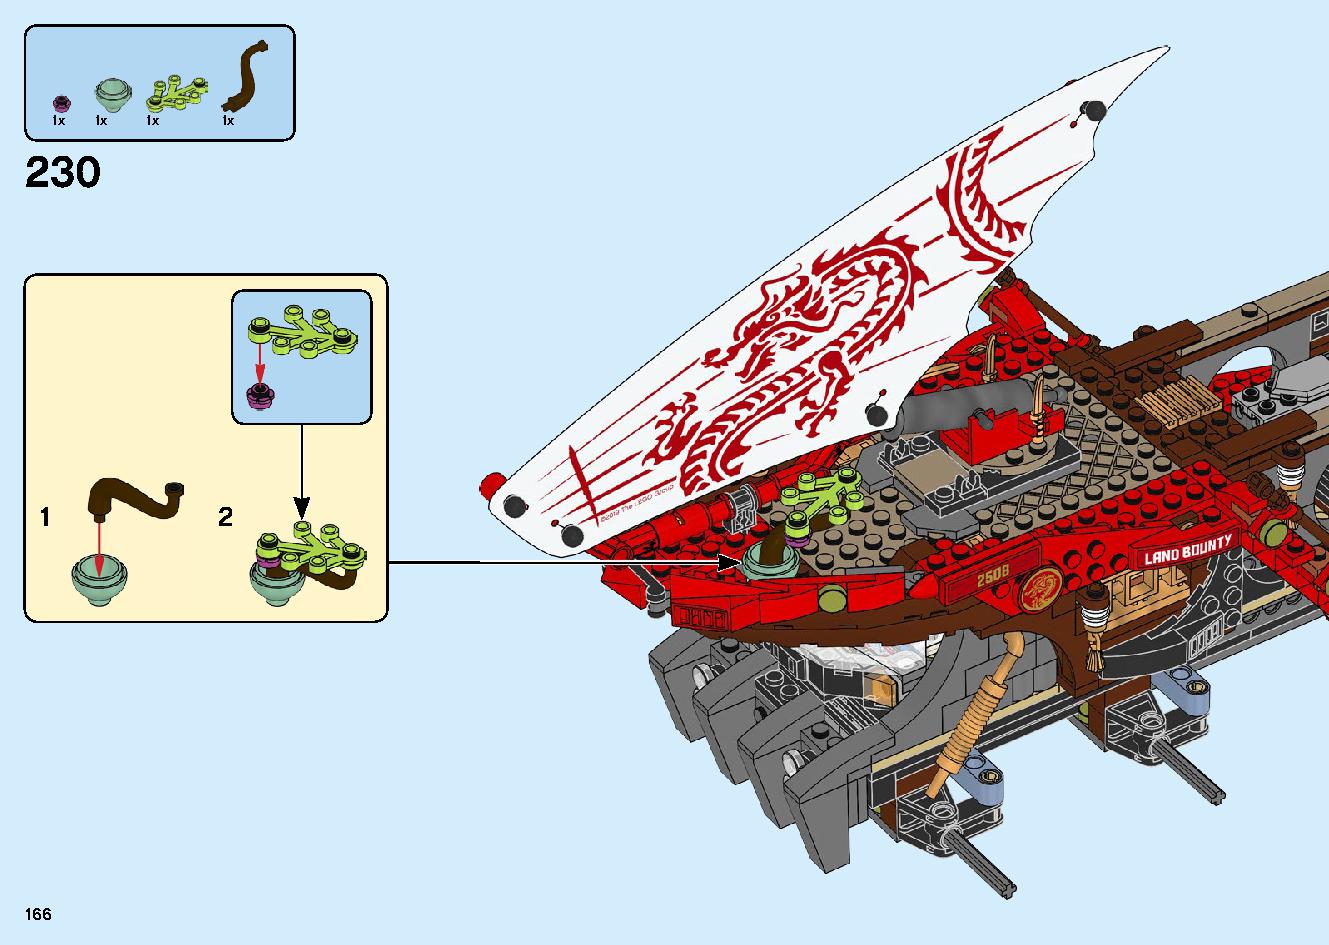 陸上戦艦バウンティ号 70677 レゴの商品情報 レゴの説明書・組立方法 166 page